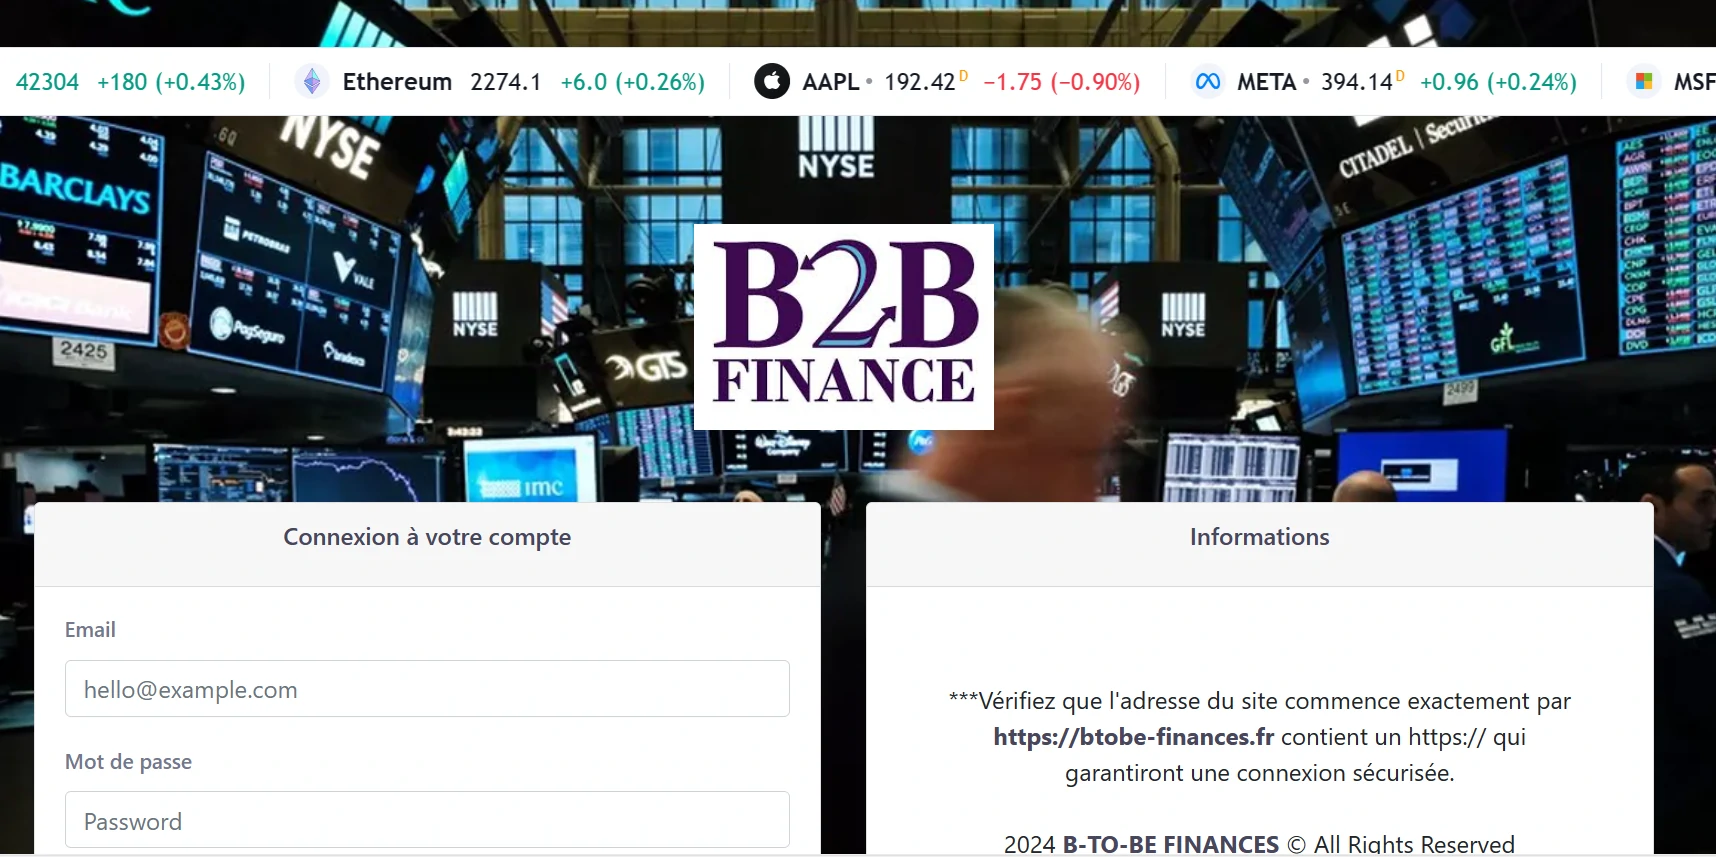 btobe-finances image du site permettant notre avis éclairé